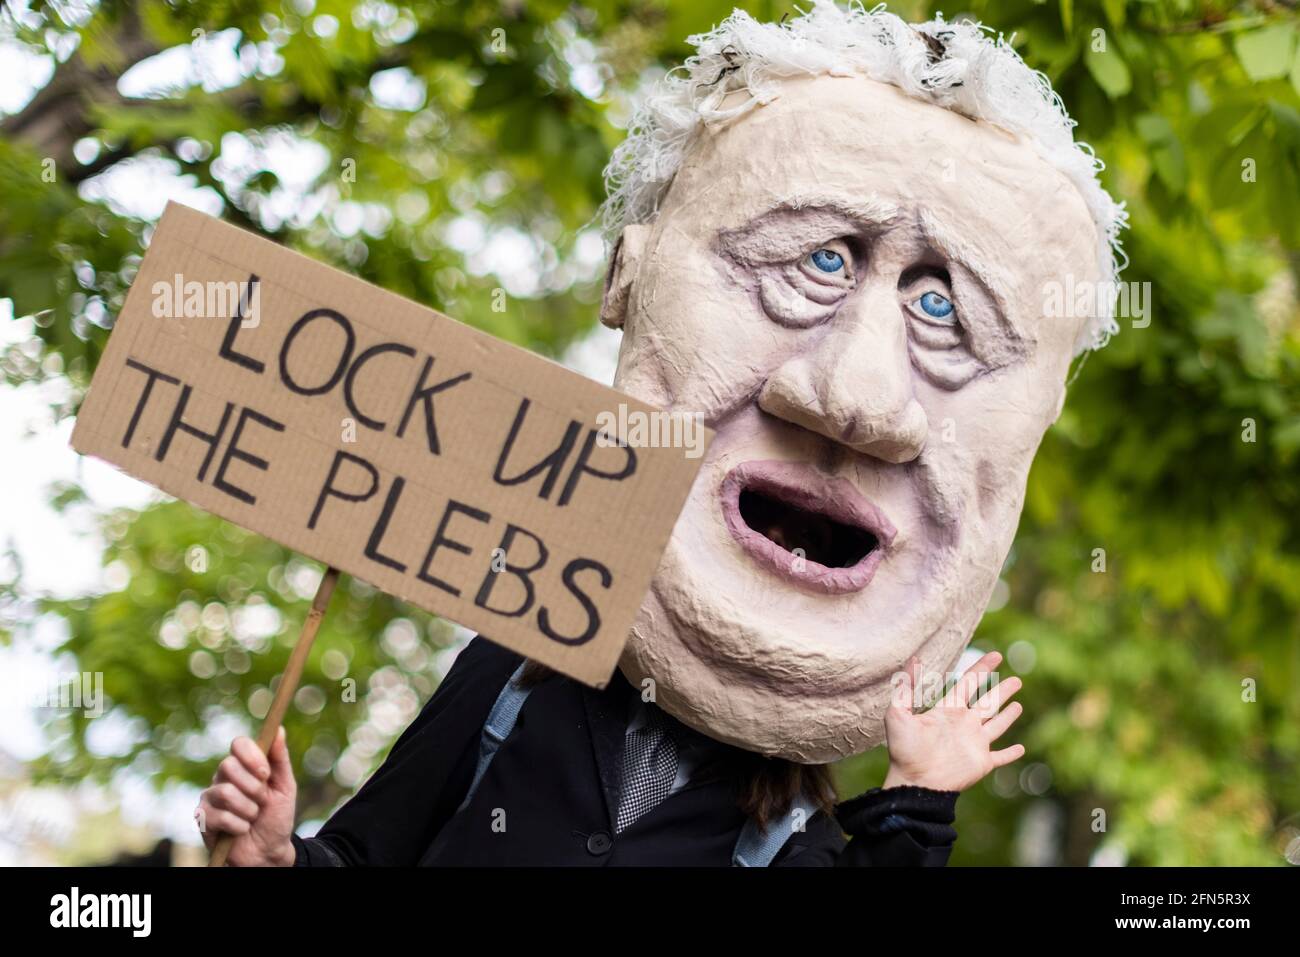 Protestler in großer Boris Johnson Gesichtsmaske während eines Protestes „Kill the Bill“ gegen den neuen Polizeigesetzentwurf, London, 1. Mai 2021 Stockfoto